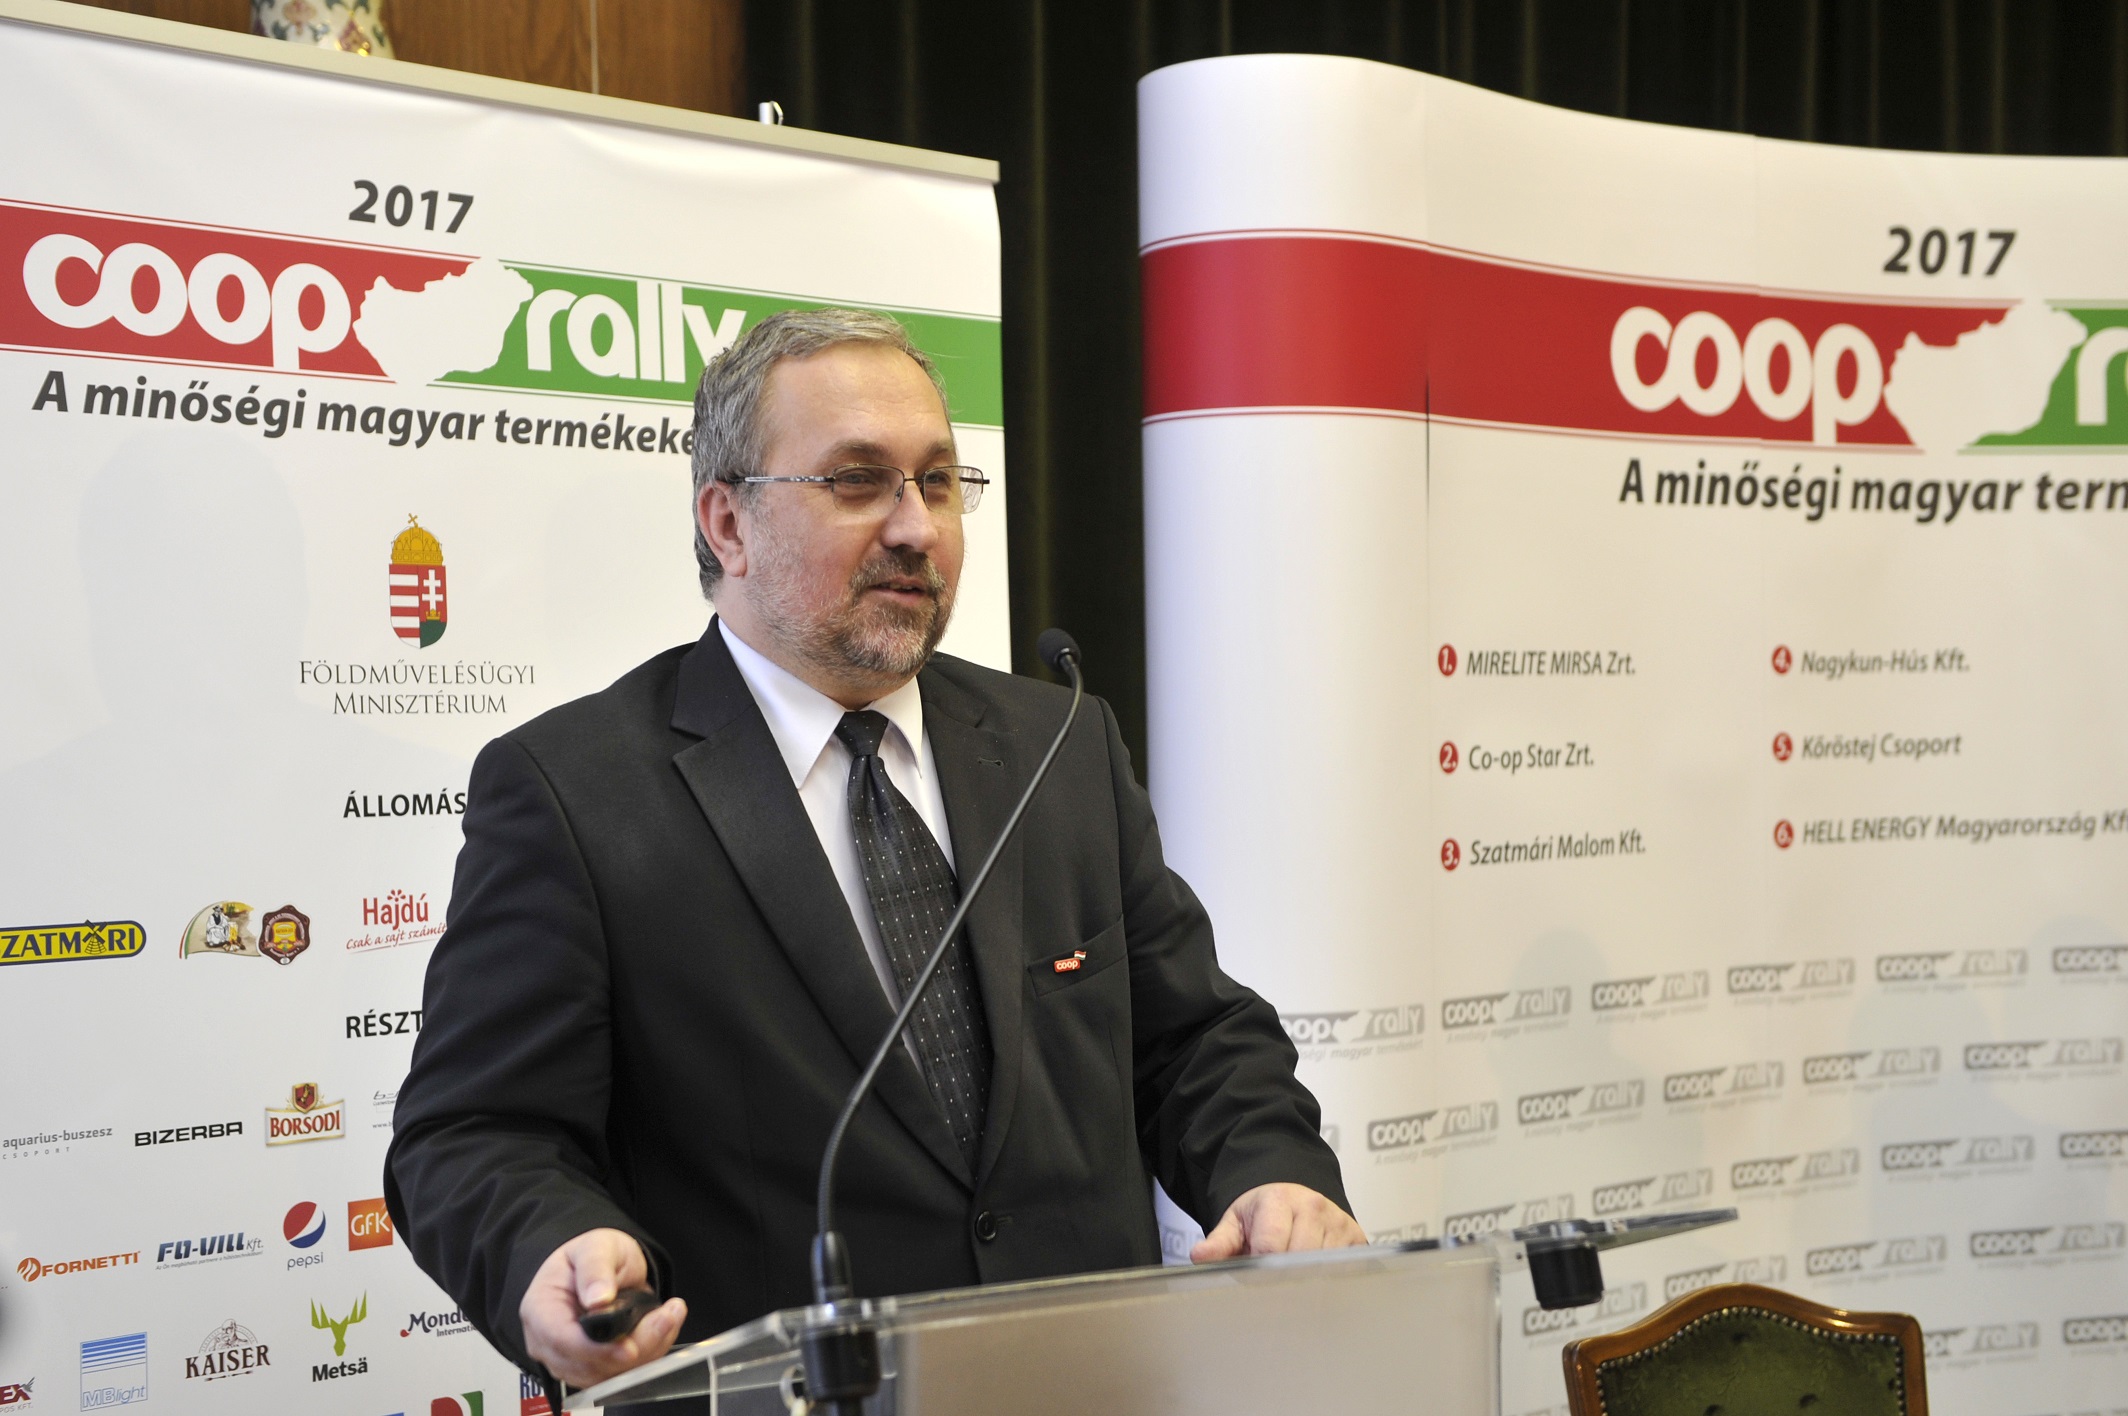 Tóth Géza, a CO-OP Hungary Zrt. vezérigazgatója